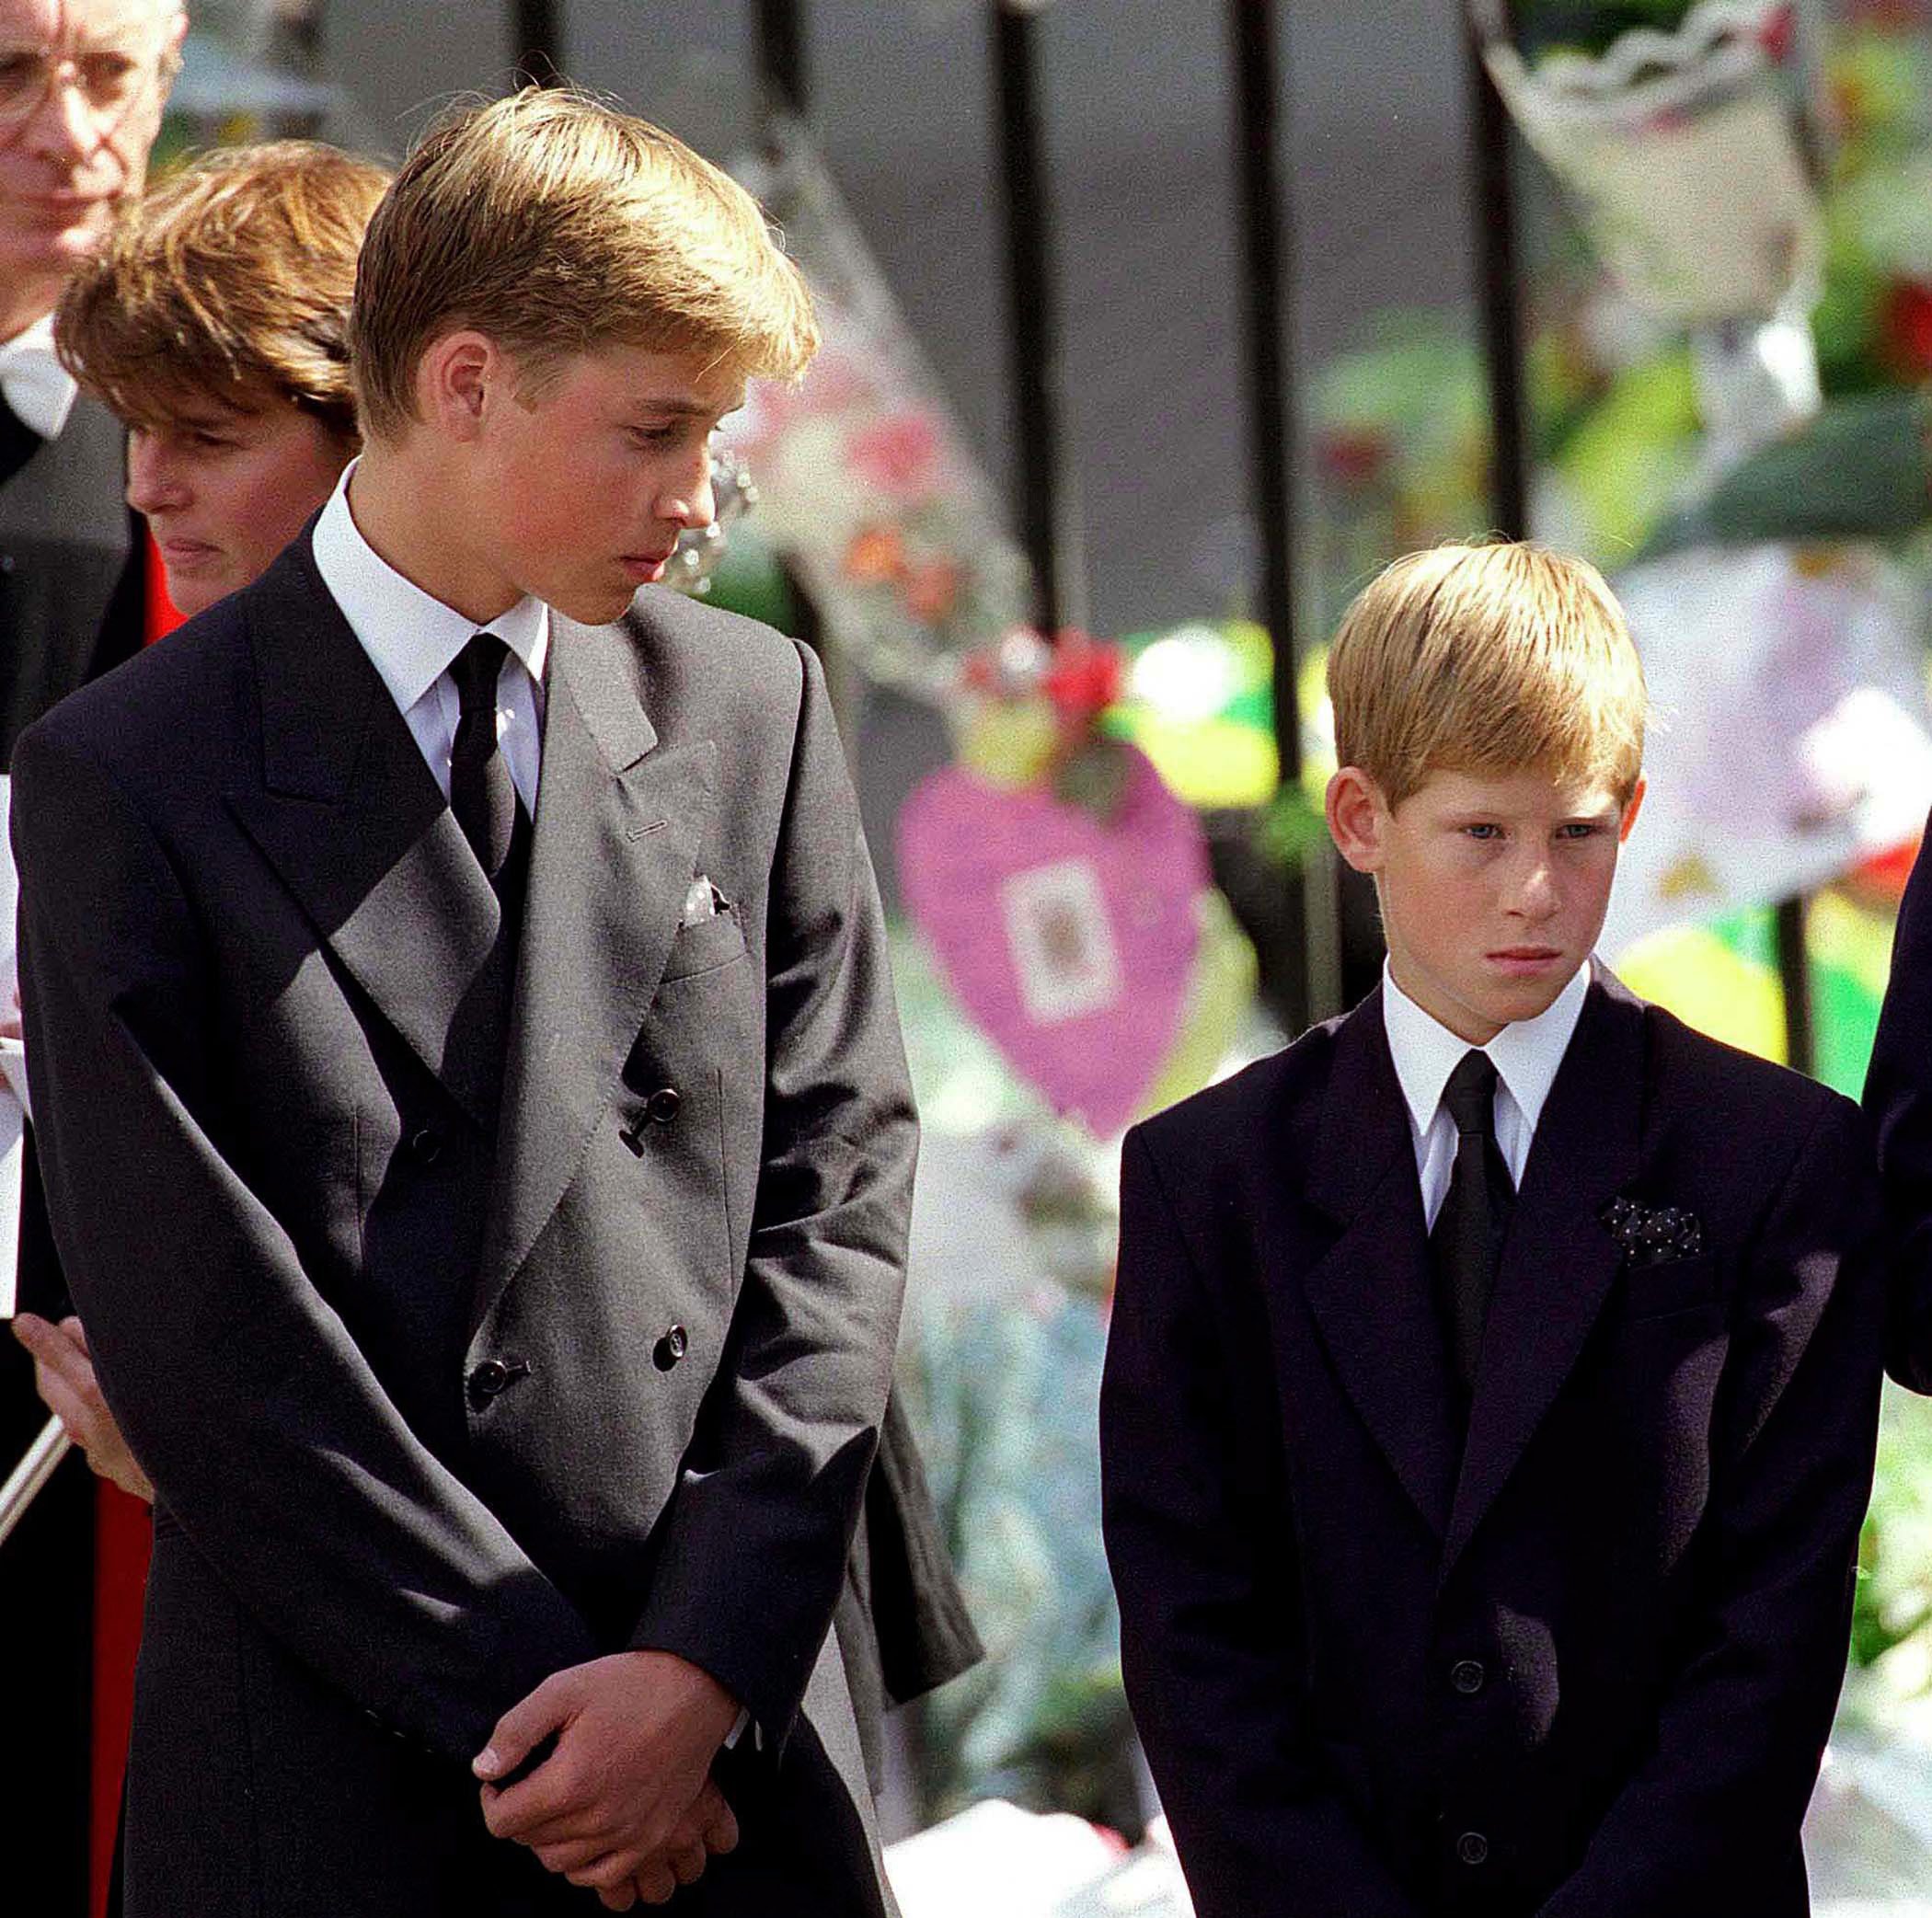 Le prince William et le prince Harry devant l'abbaye de Westminster lors des funérailles de leur mère, la princesse Diana, le 6 septembre 1997 à Londres, en Angleterre. | Source : Getty Images